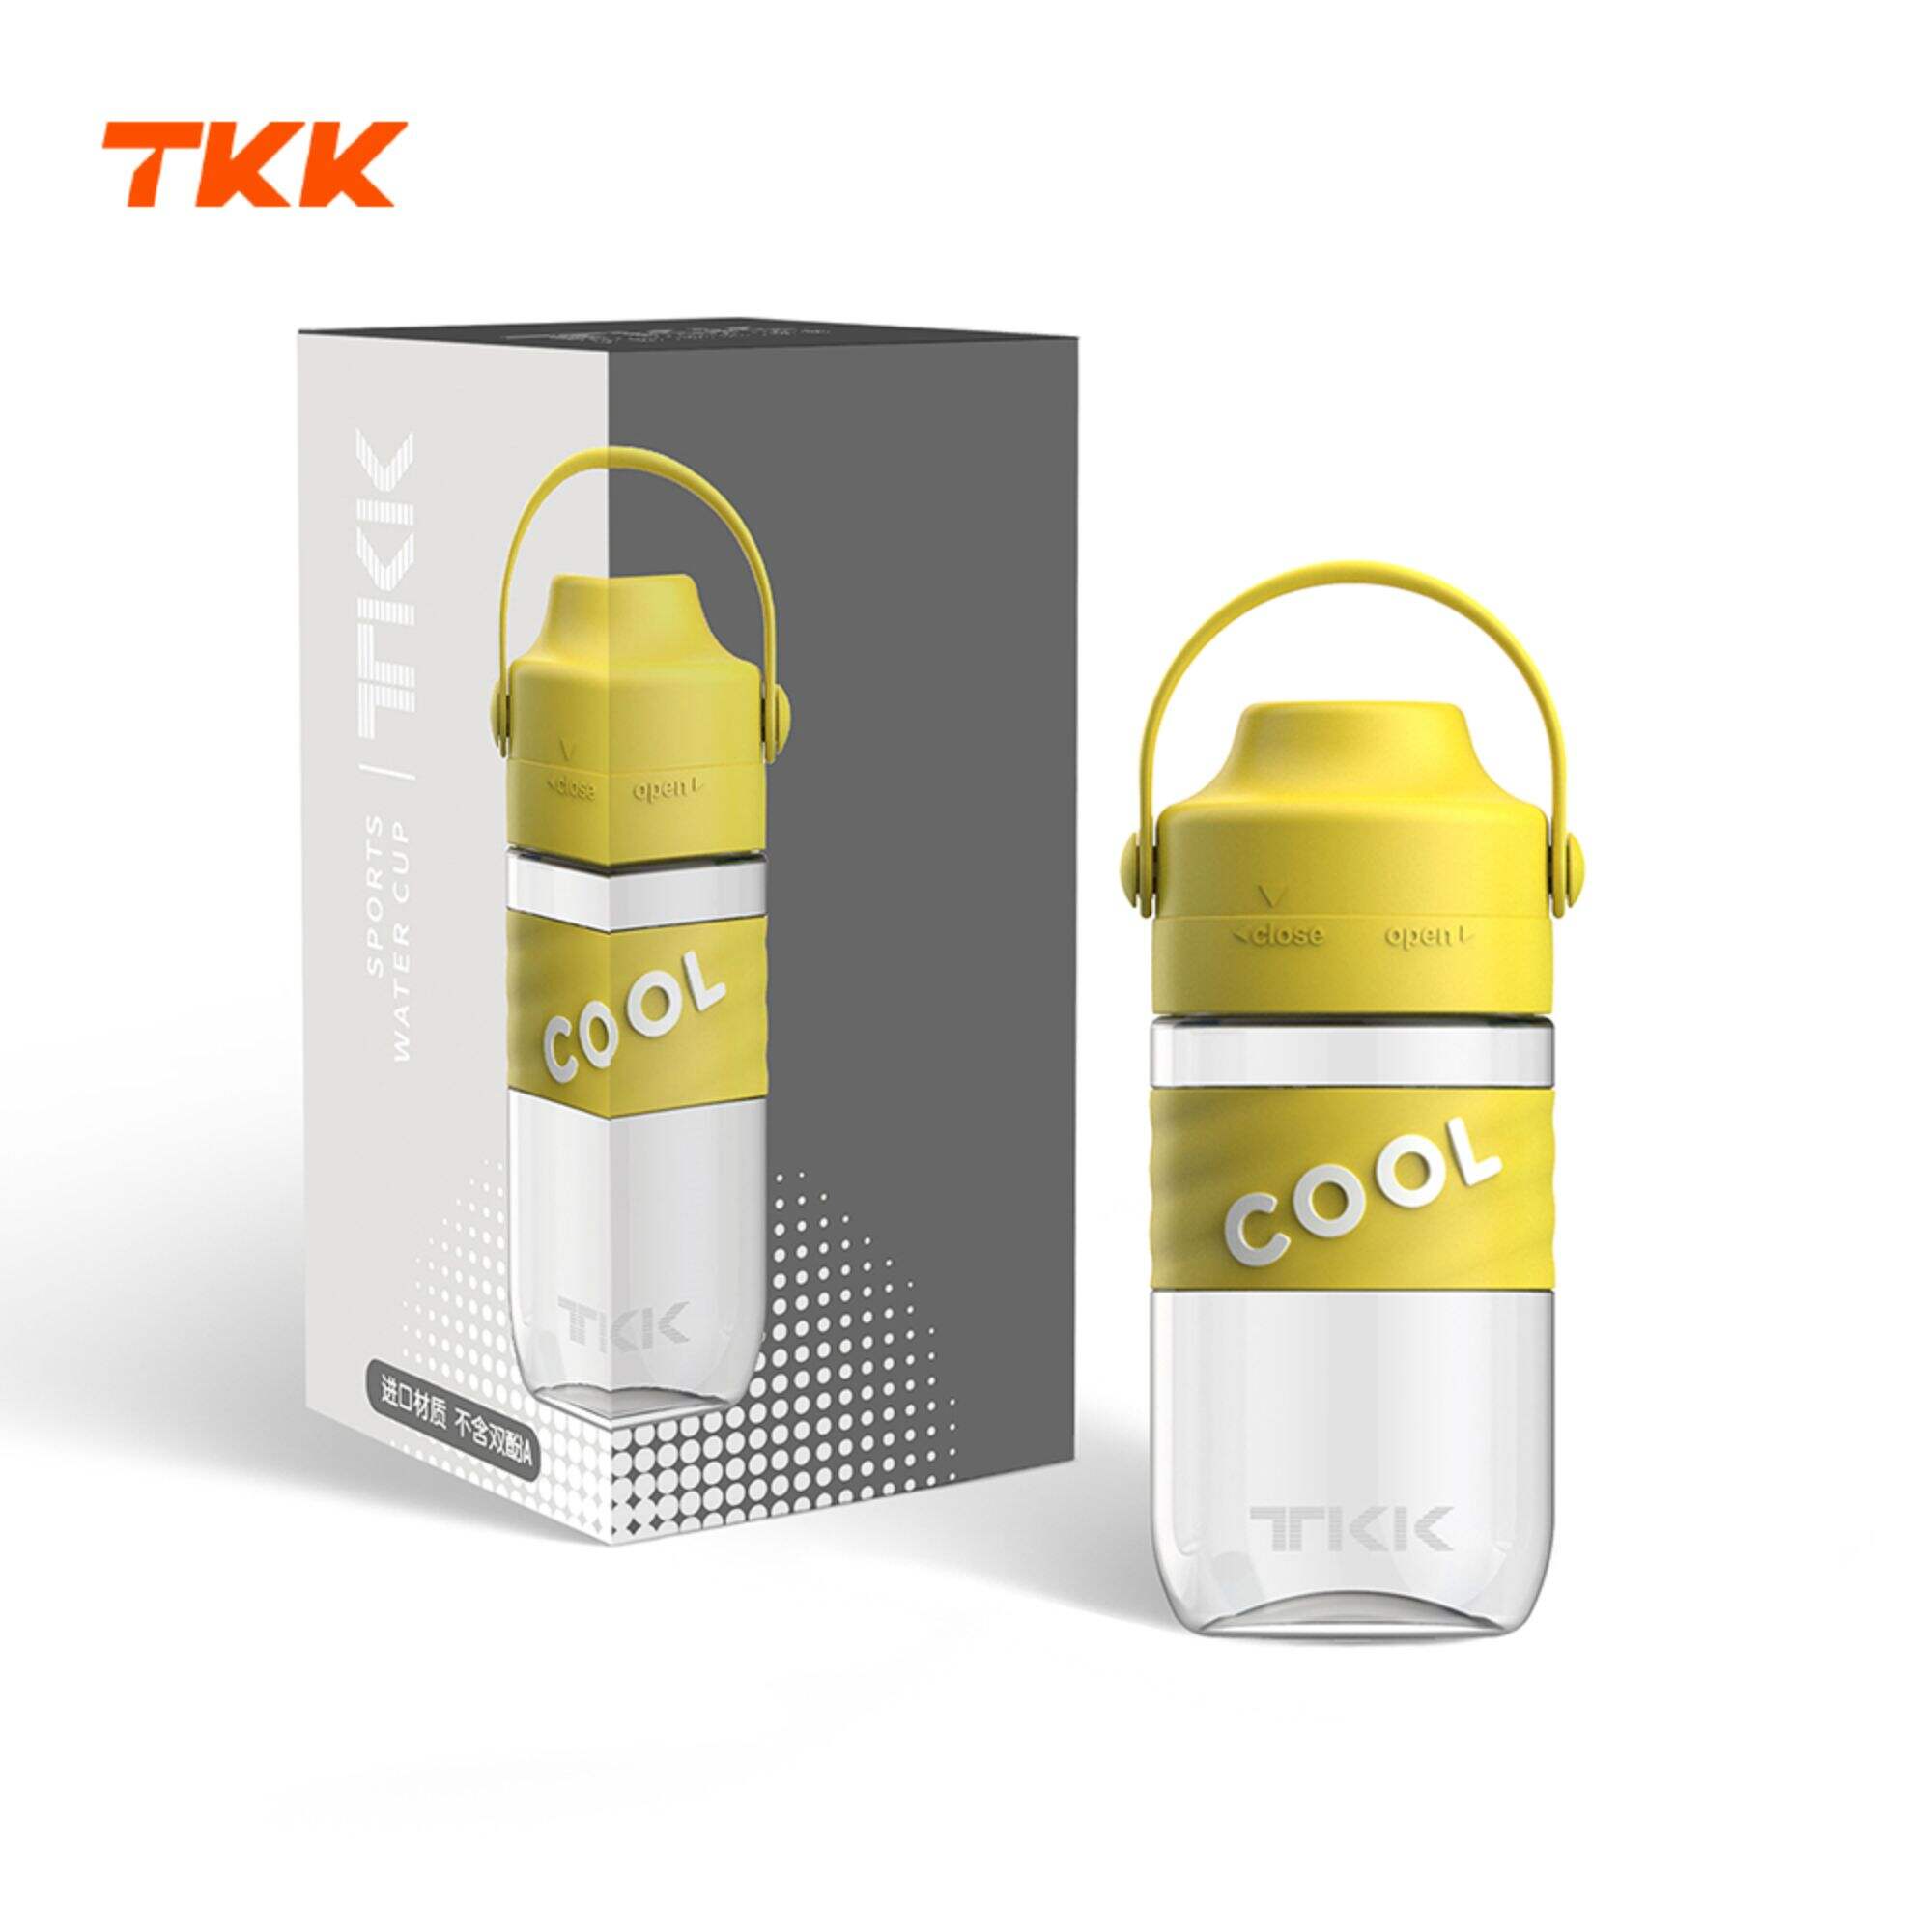 TKK 18oz/500ml Water Bottle with Straw & Carry Handle, Leak-proof Tritan BPA Free Sports Water Bottles for School Kids Girls & Boys